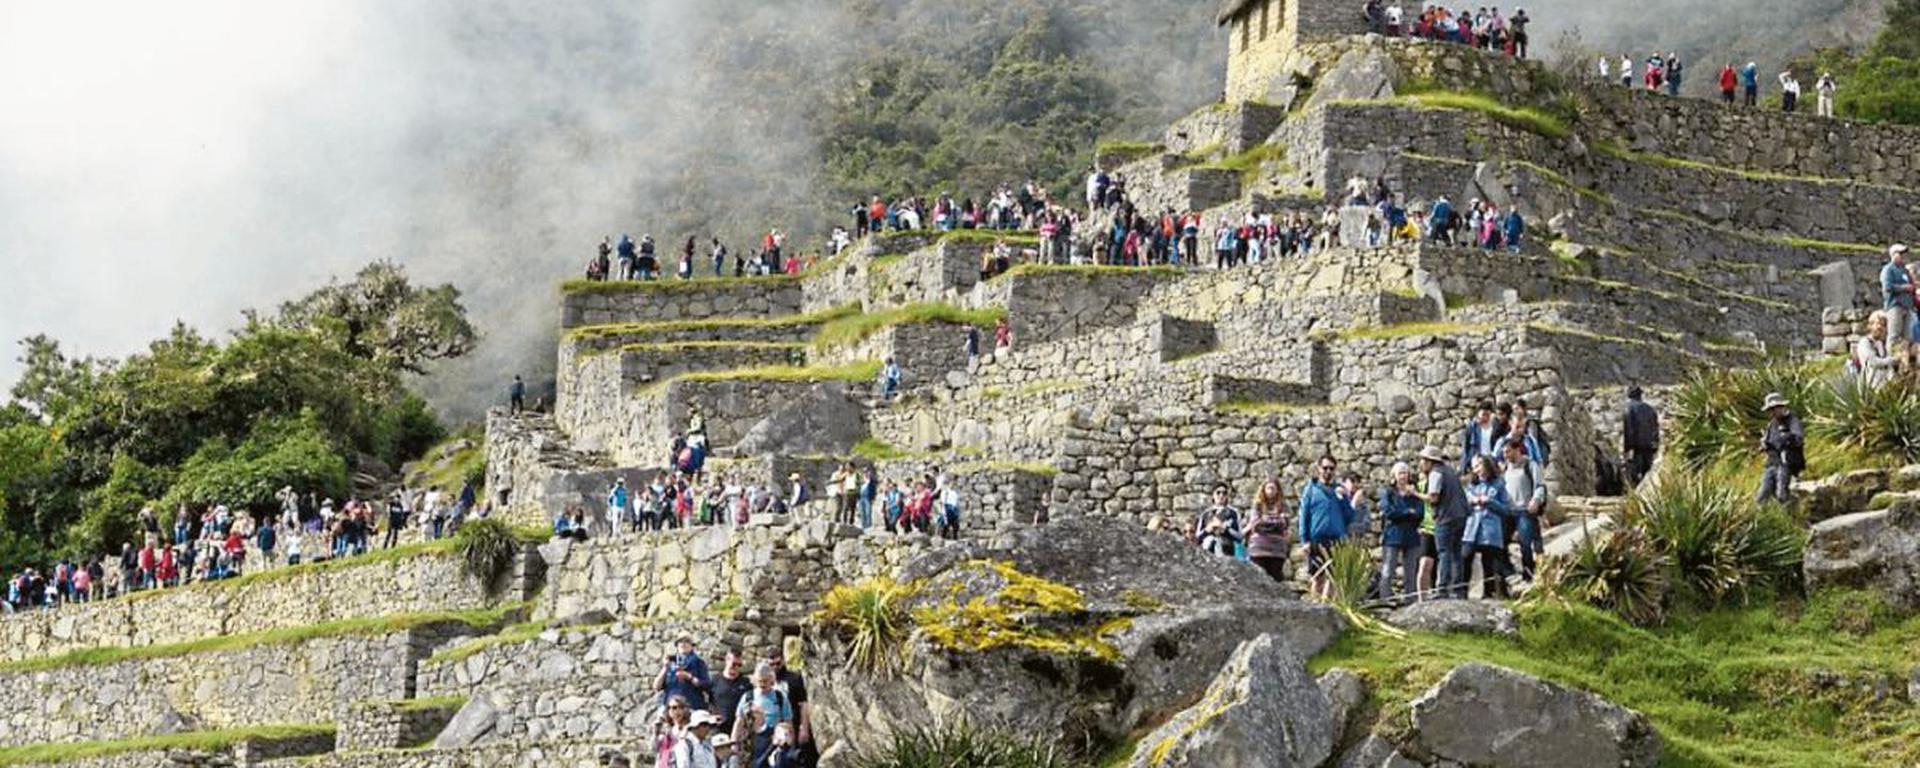 Semana Santa: Turistas peruanos se animan por viajar a última hora, ¿qué destinos visitarán? | INFORME